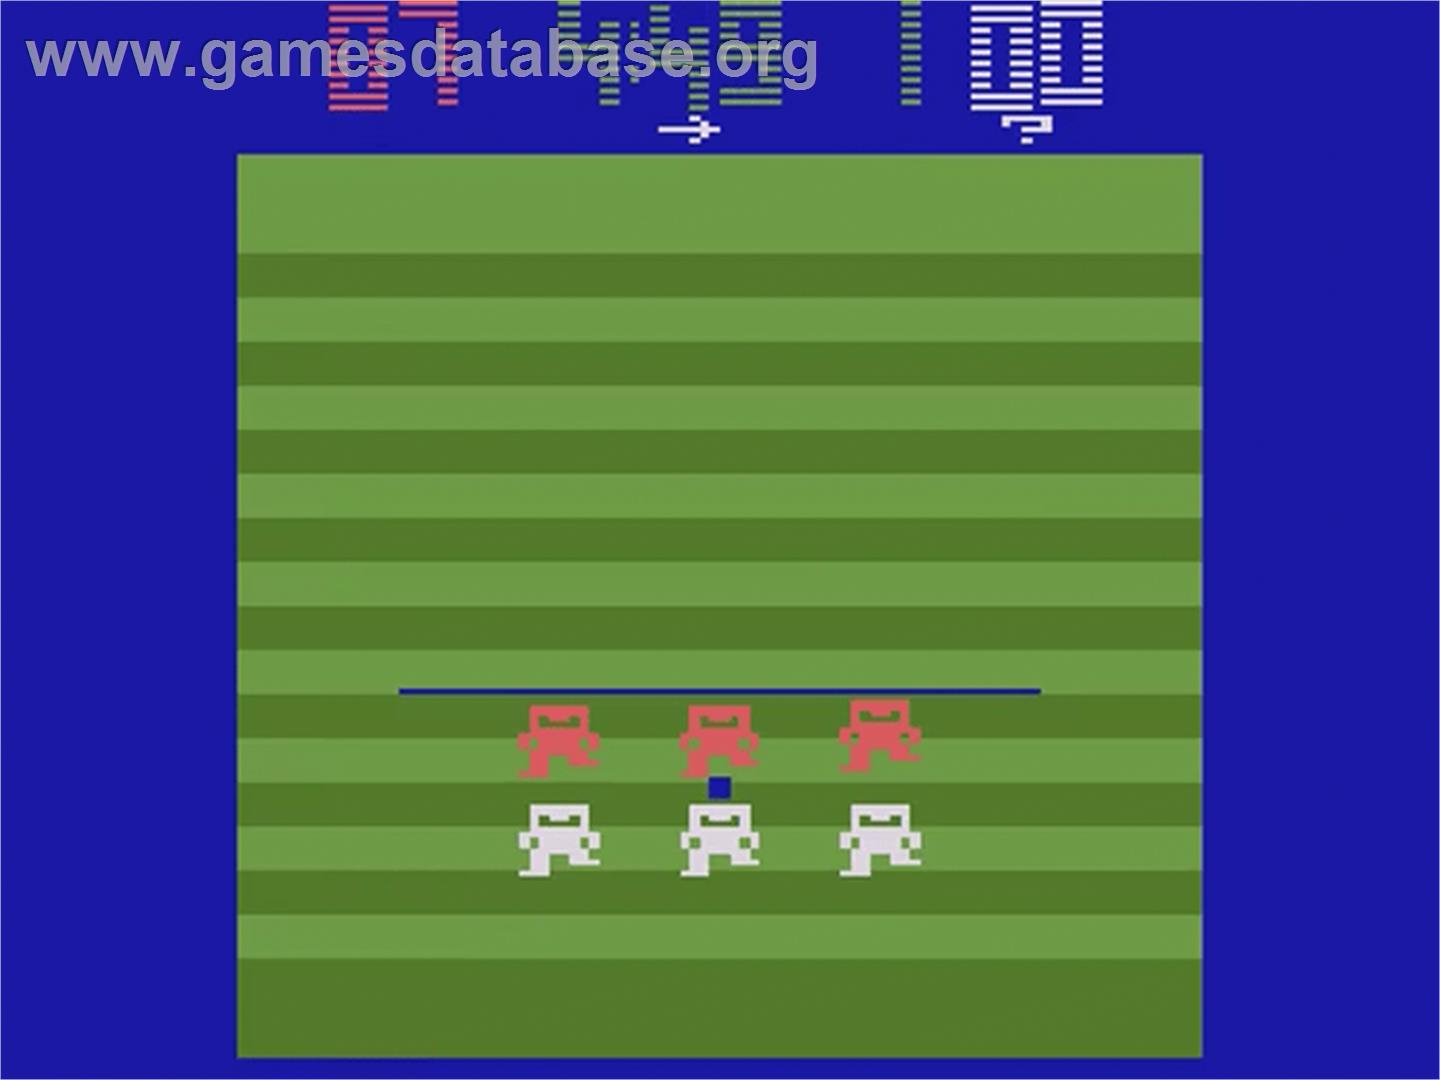 NFL Football - Atari 2600 - Artwork - In Game